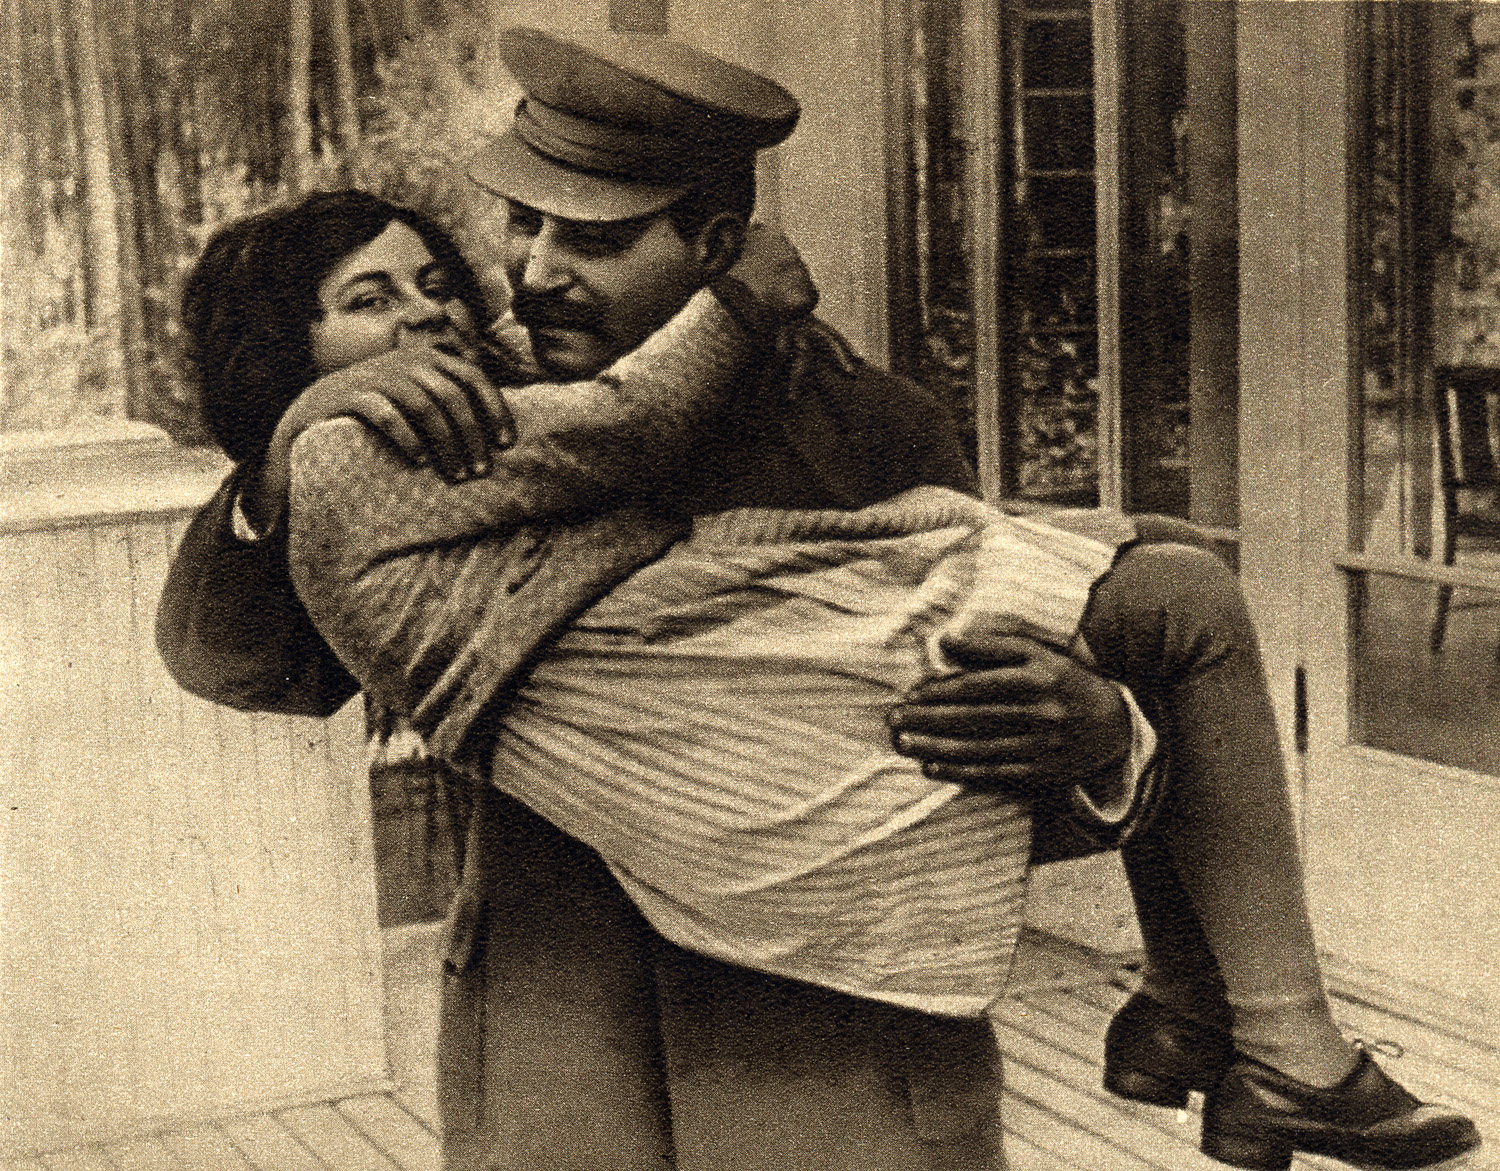 Фото сталина с женой и детьми